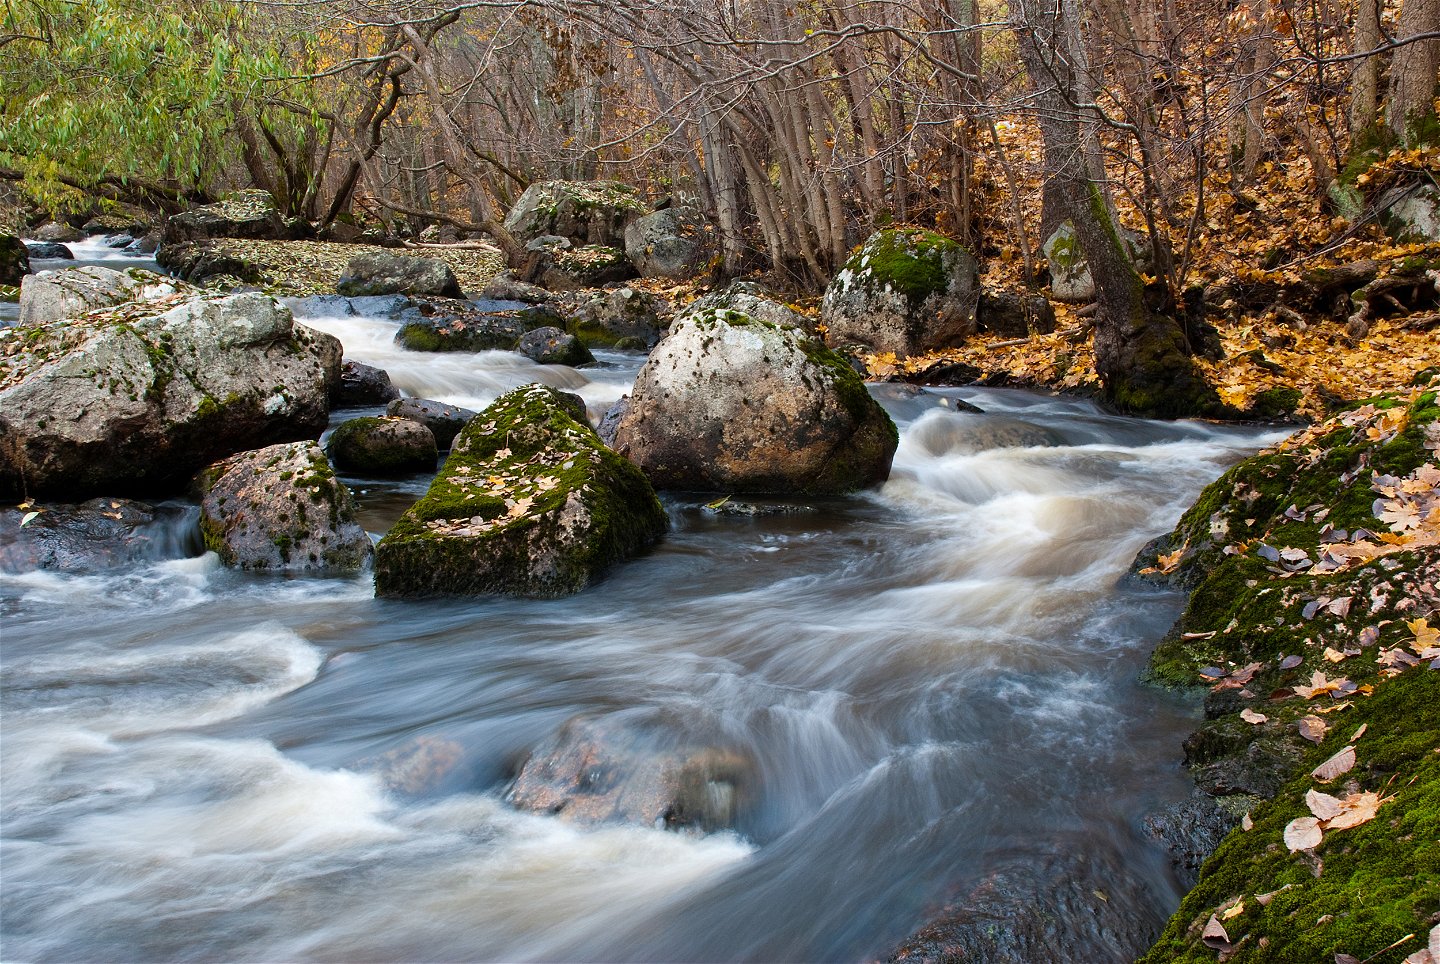 Vattnet forsar runt stenar. På sidan av ån ligger gula löv från träden.